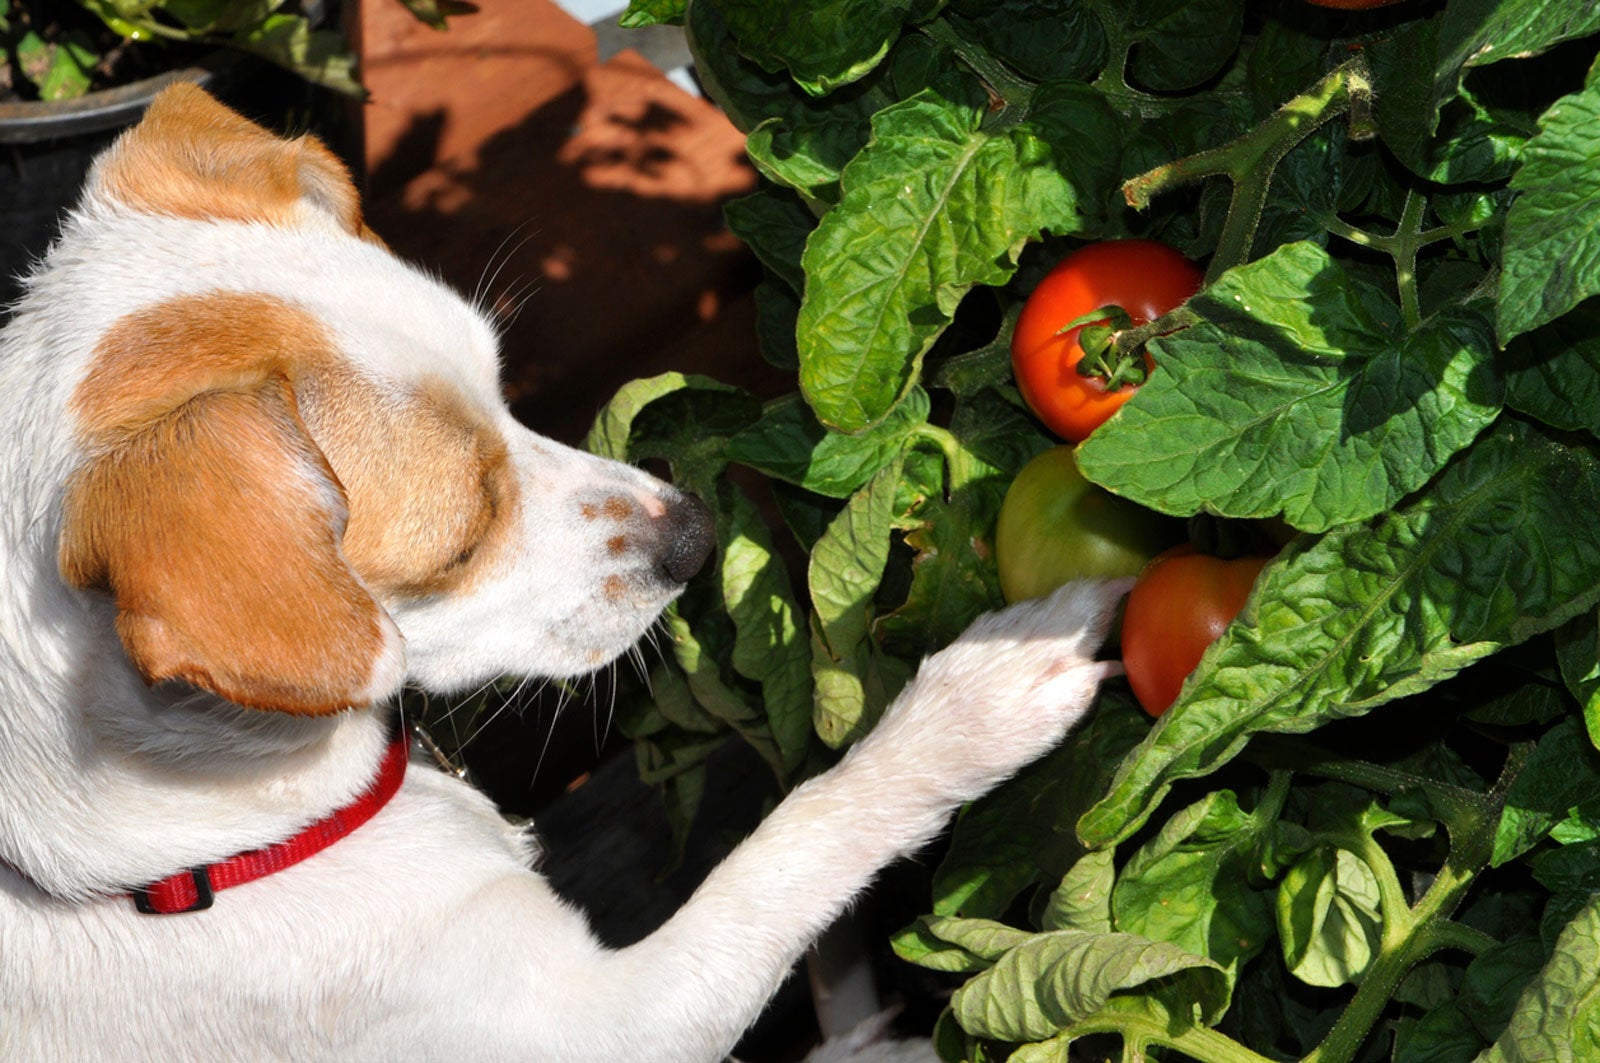 dogs trust list of poisonous plants